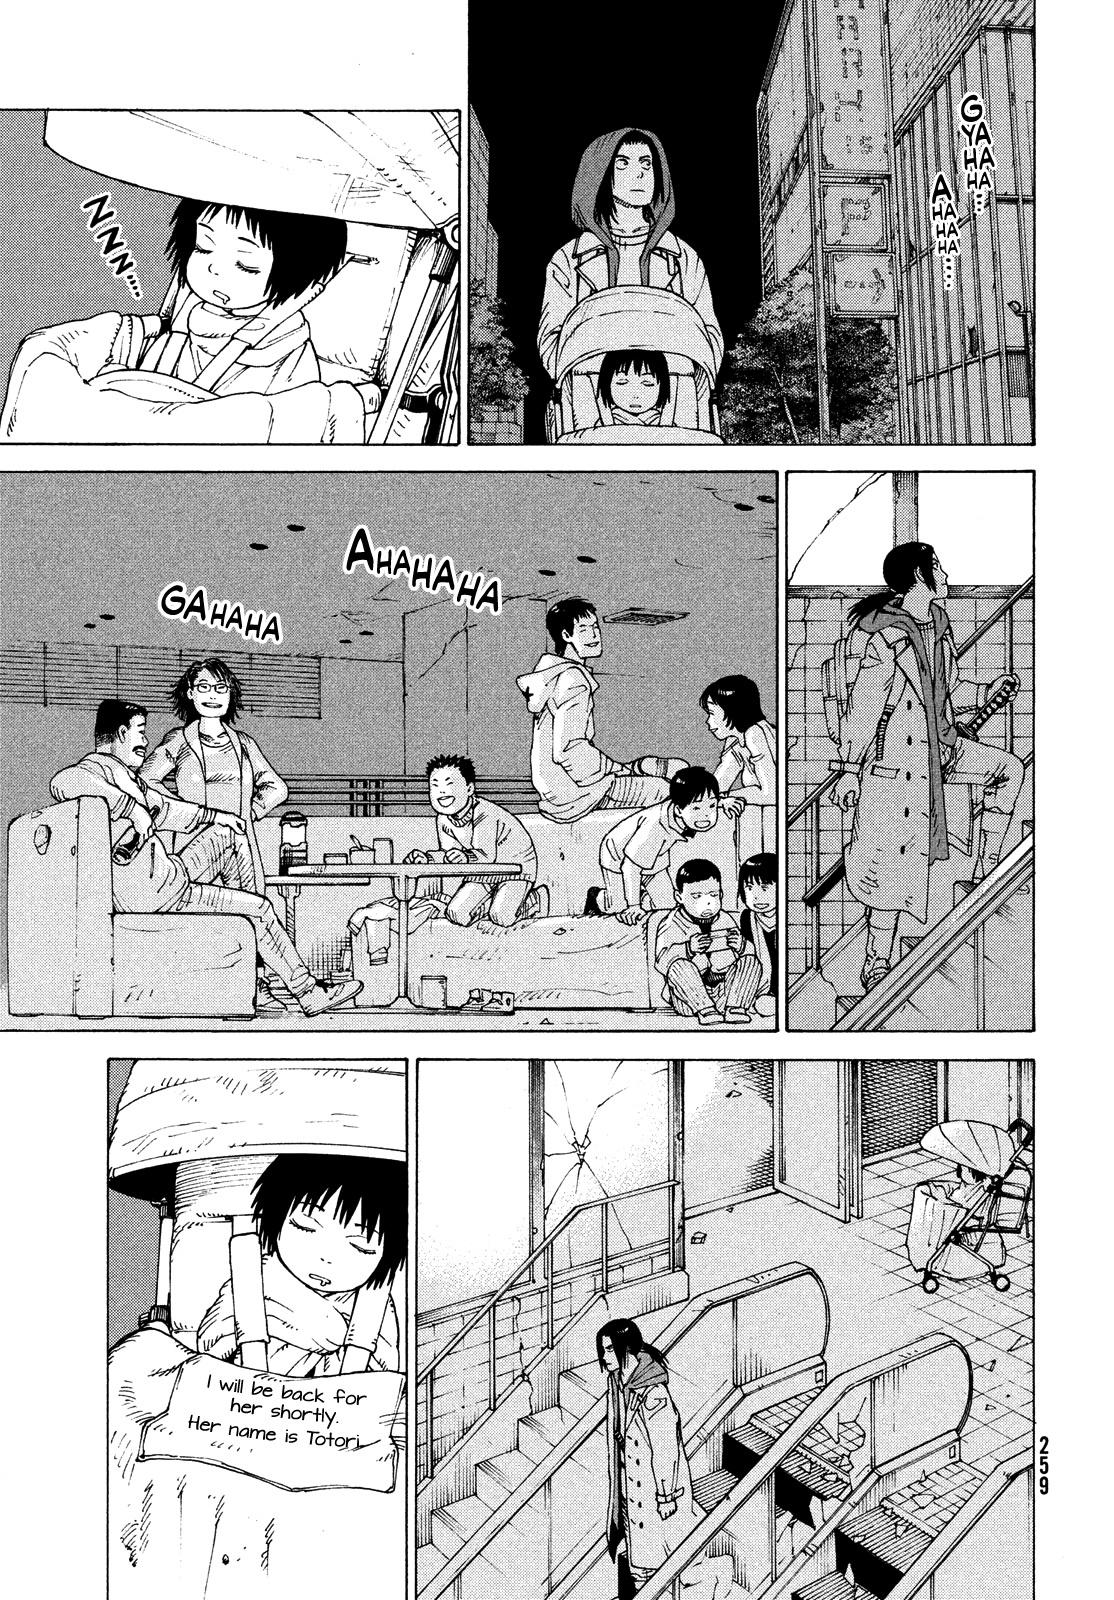 Tengoku Daimakyou Vol.9 Chapter 50: Michika ➁ page 4 - Mangakakalot